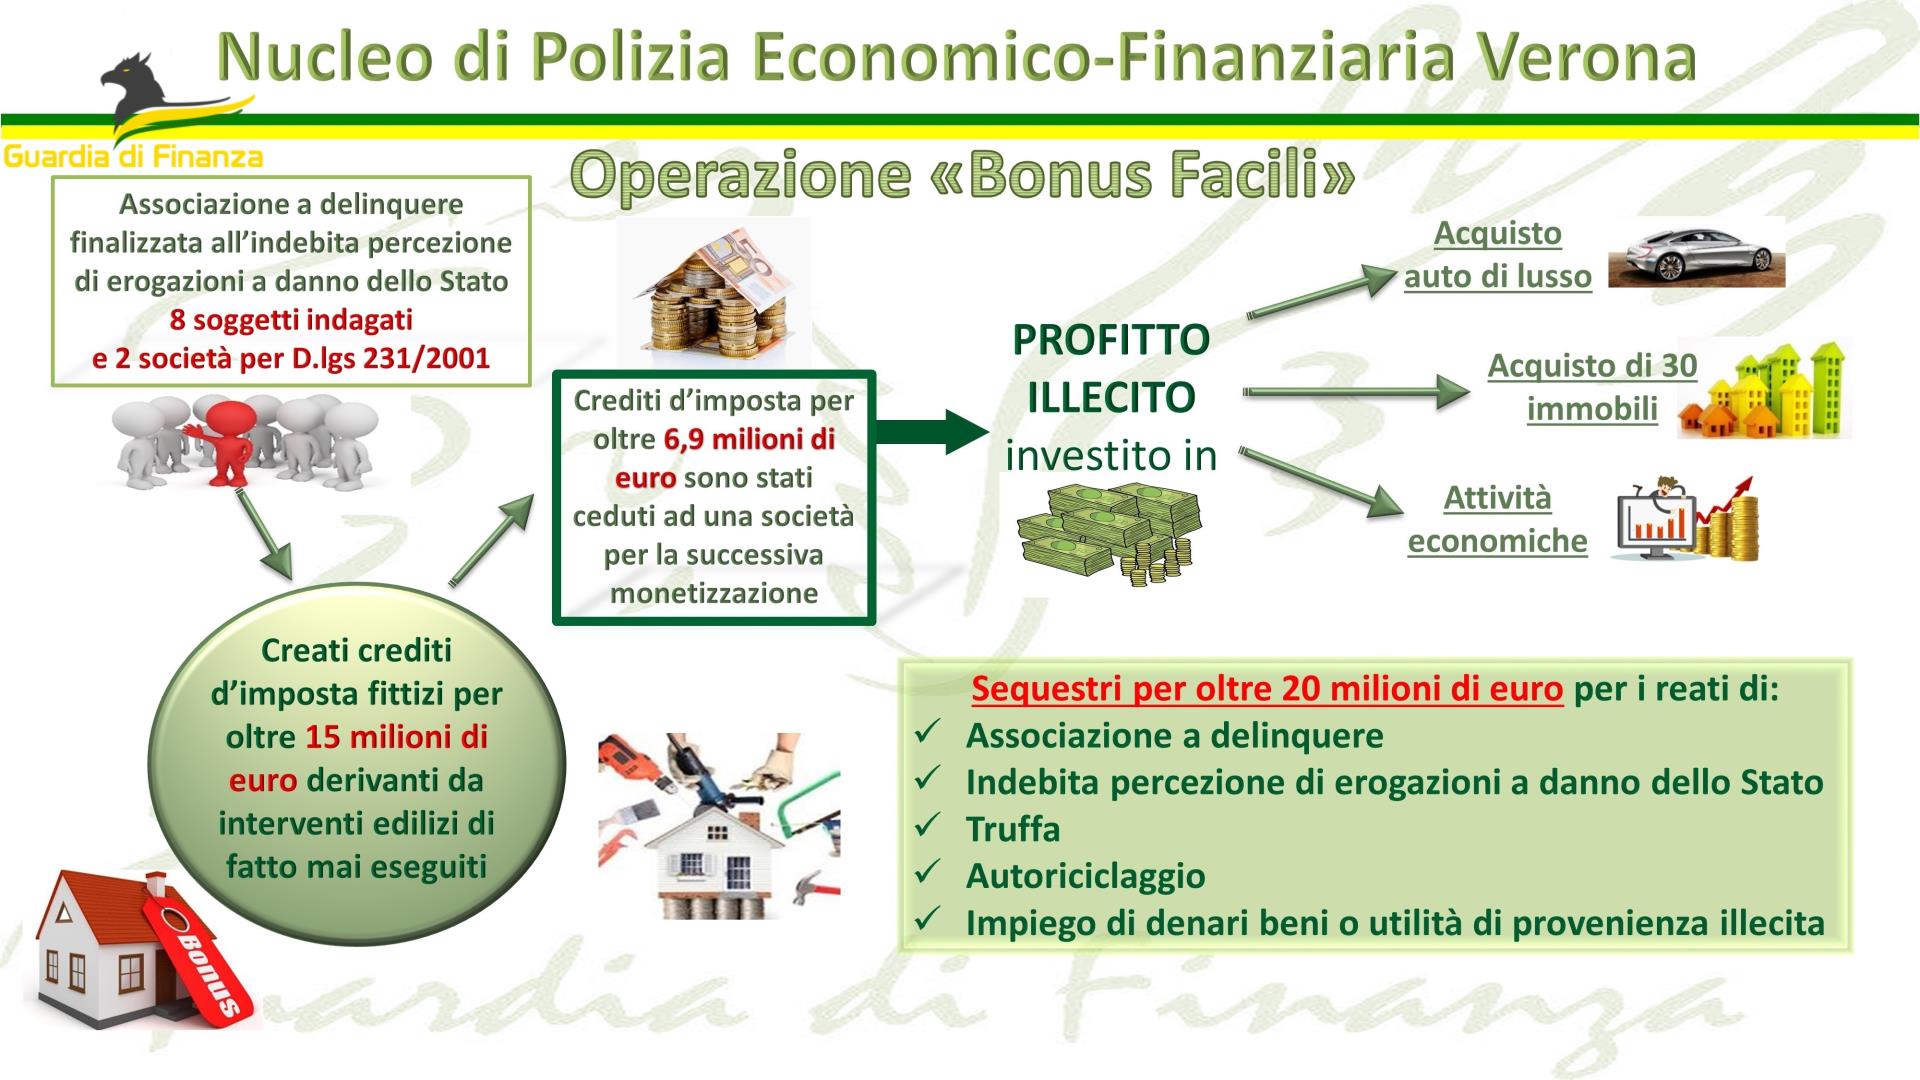 Verona, maxi frode sul bonus facciate: sequestrati 30 immobili, 8 indagati “nullatenenti” – VIDEO - veronaoggi.it